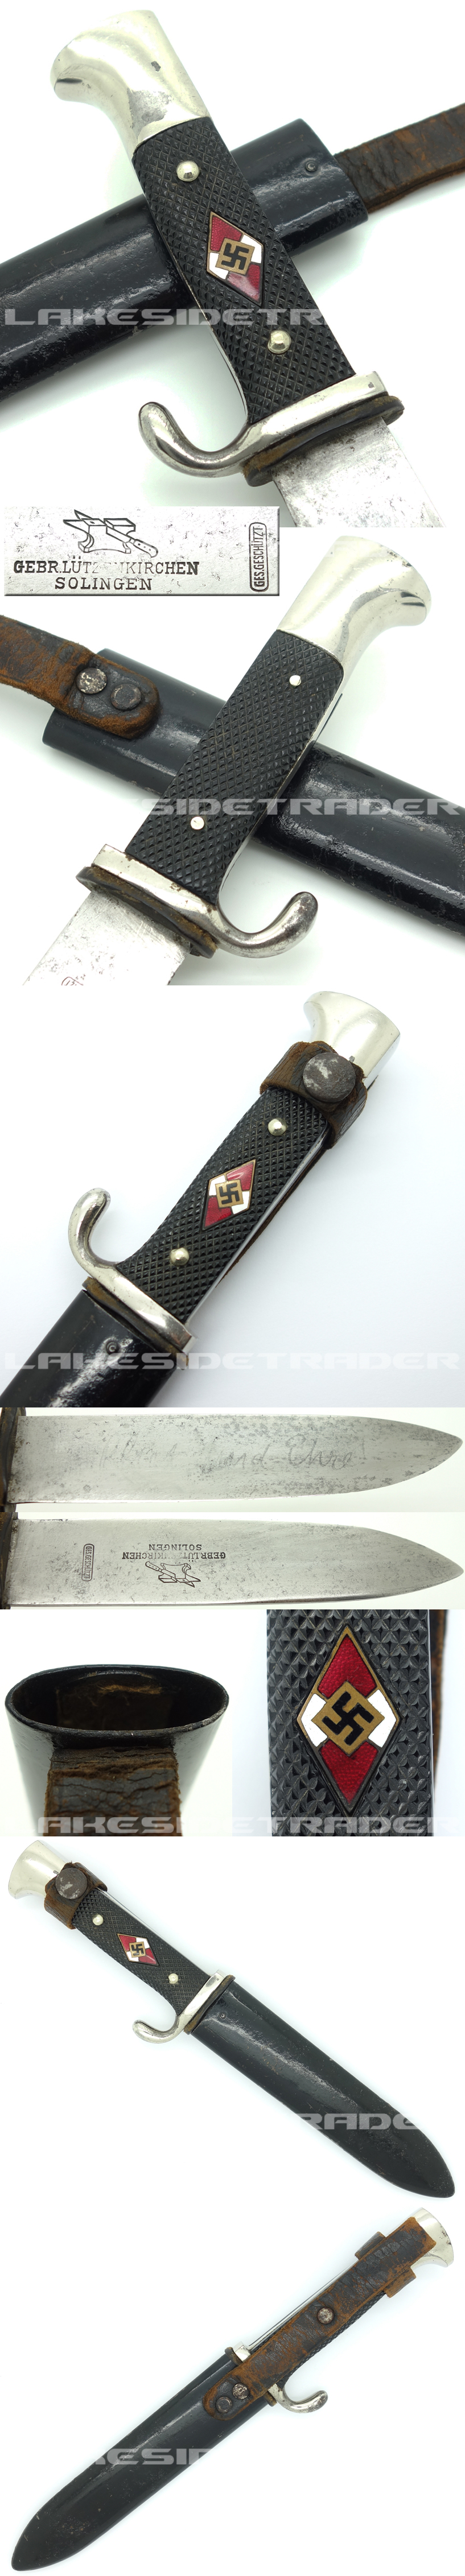 Rare - Early Hitler Youth Knife by Gebr. Lützenkirchen